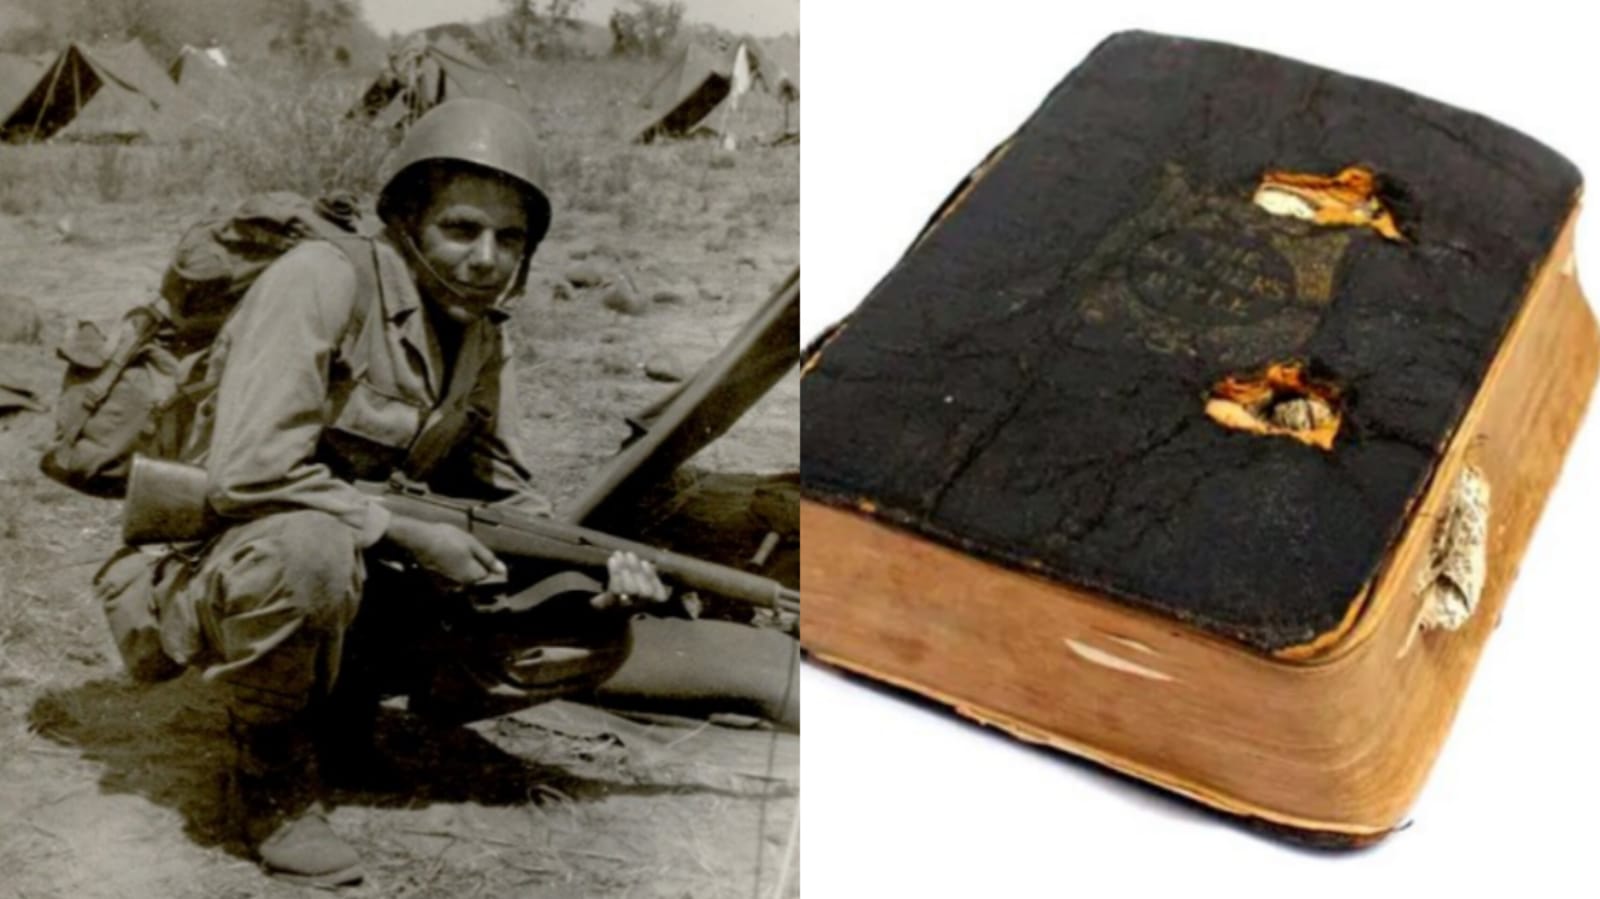 Bíblia salvou soldado em ataque aéreo na Primeira Guerra Mundial